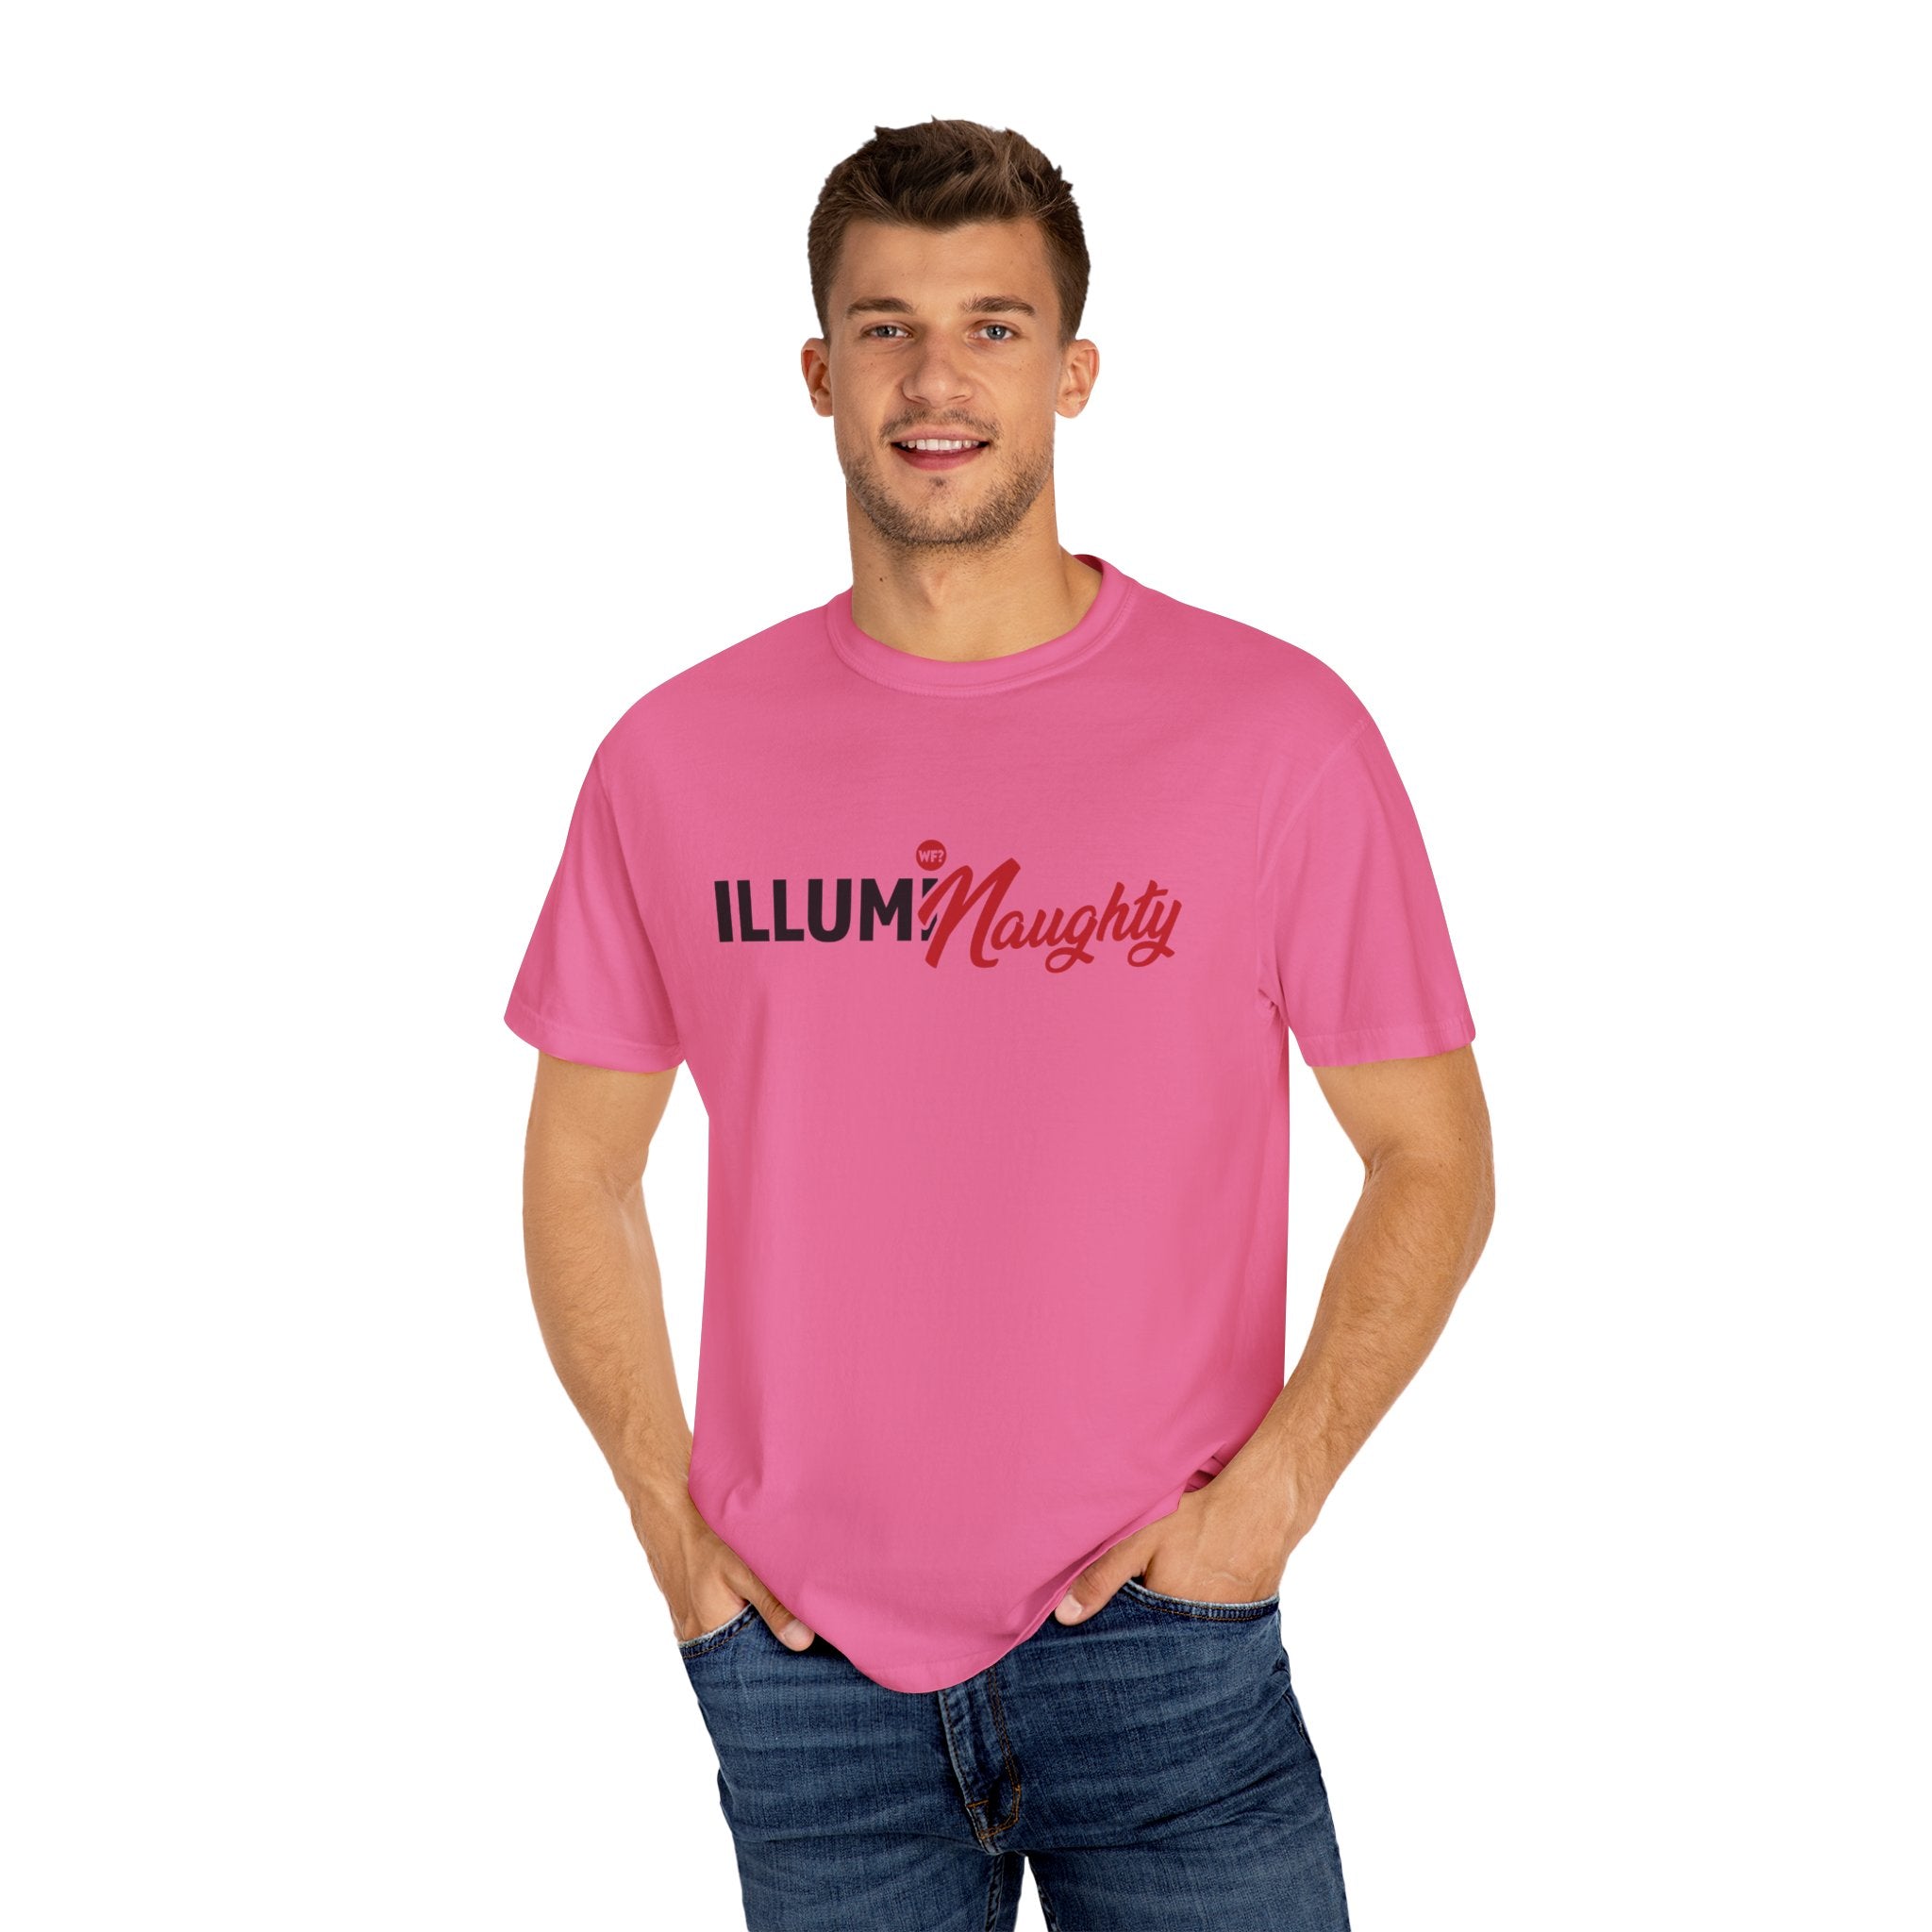 Buy crunchberry IllumiNaughty Unisex T-shirt